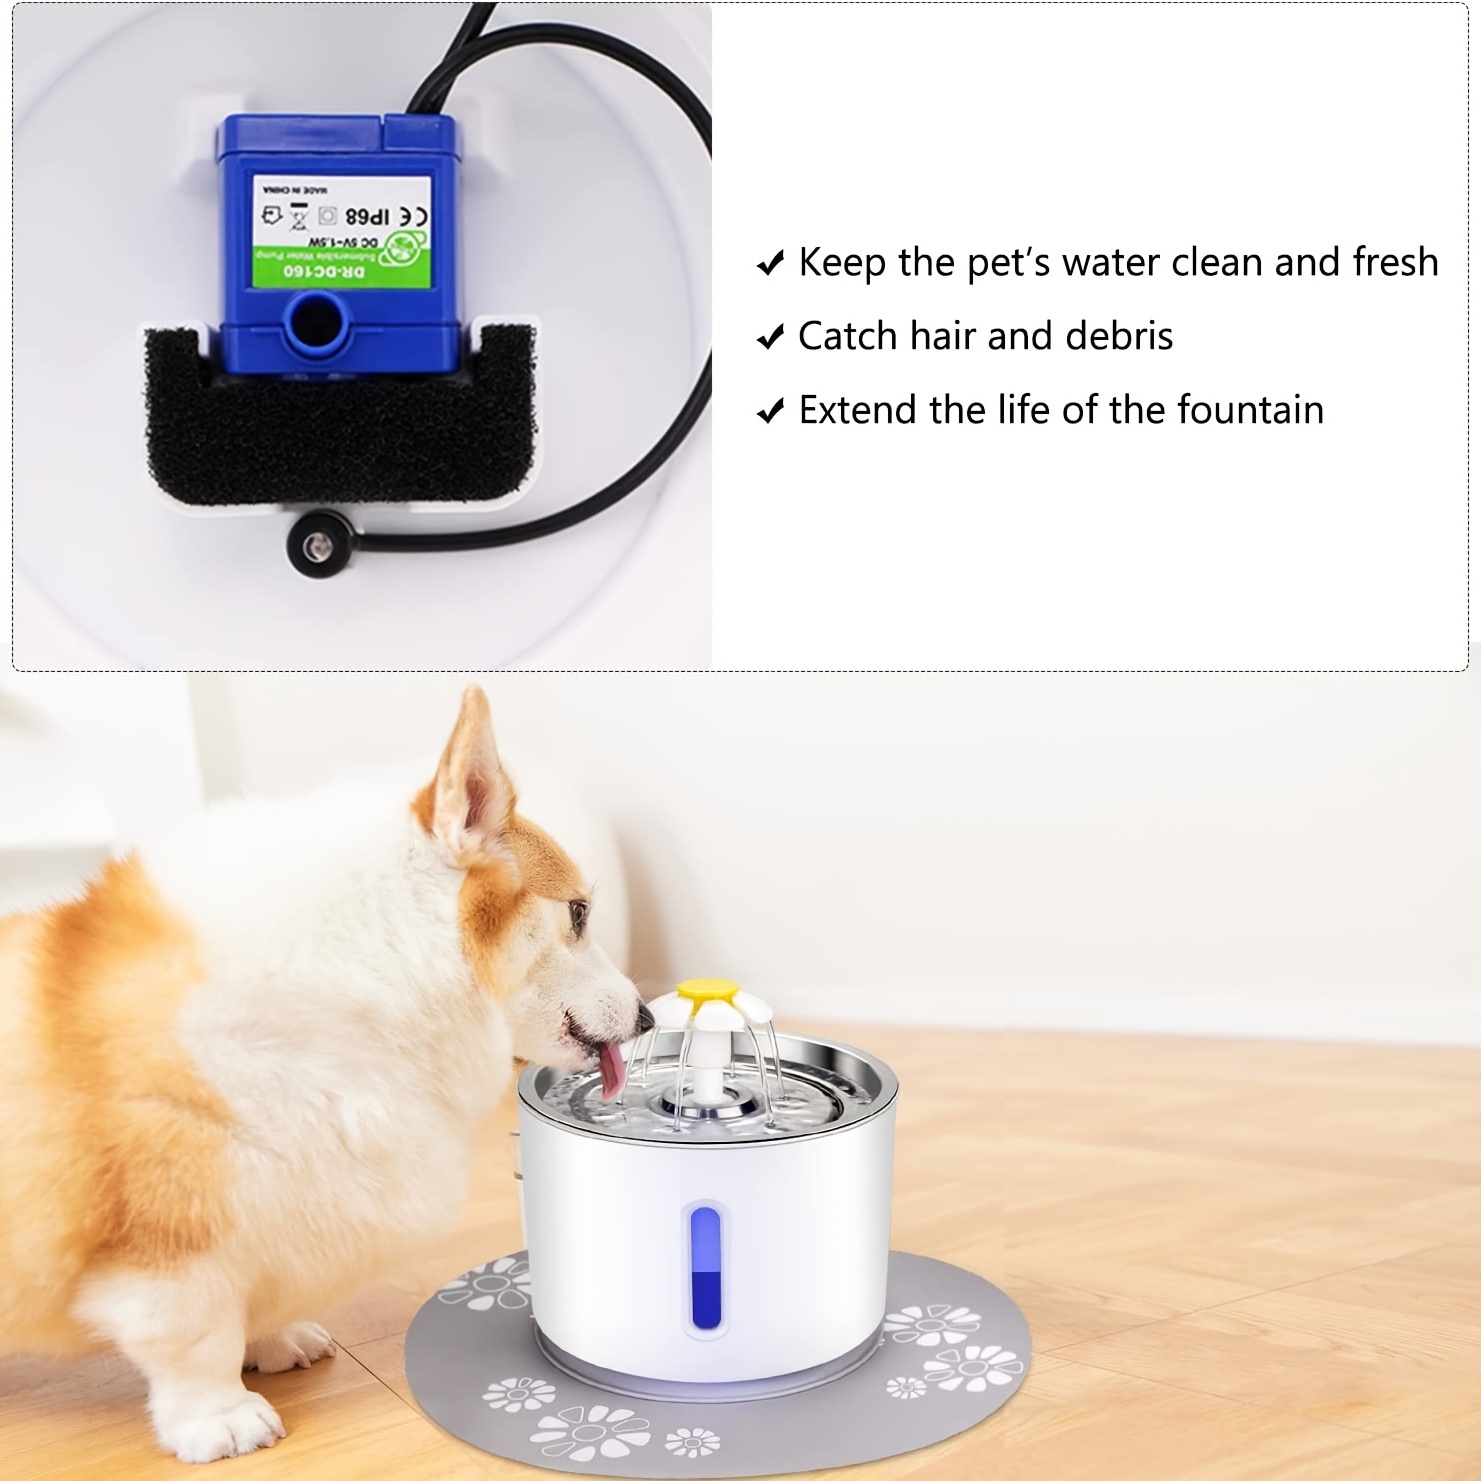 Pompes de remplacement pour fontaine à chat ou chien